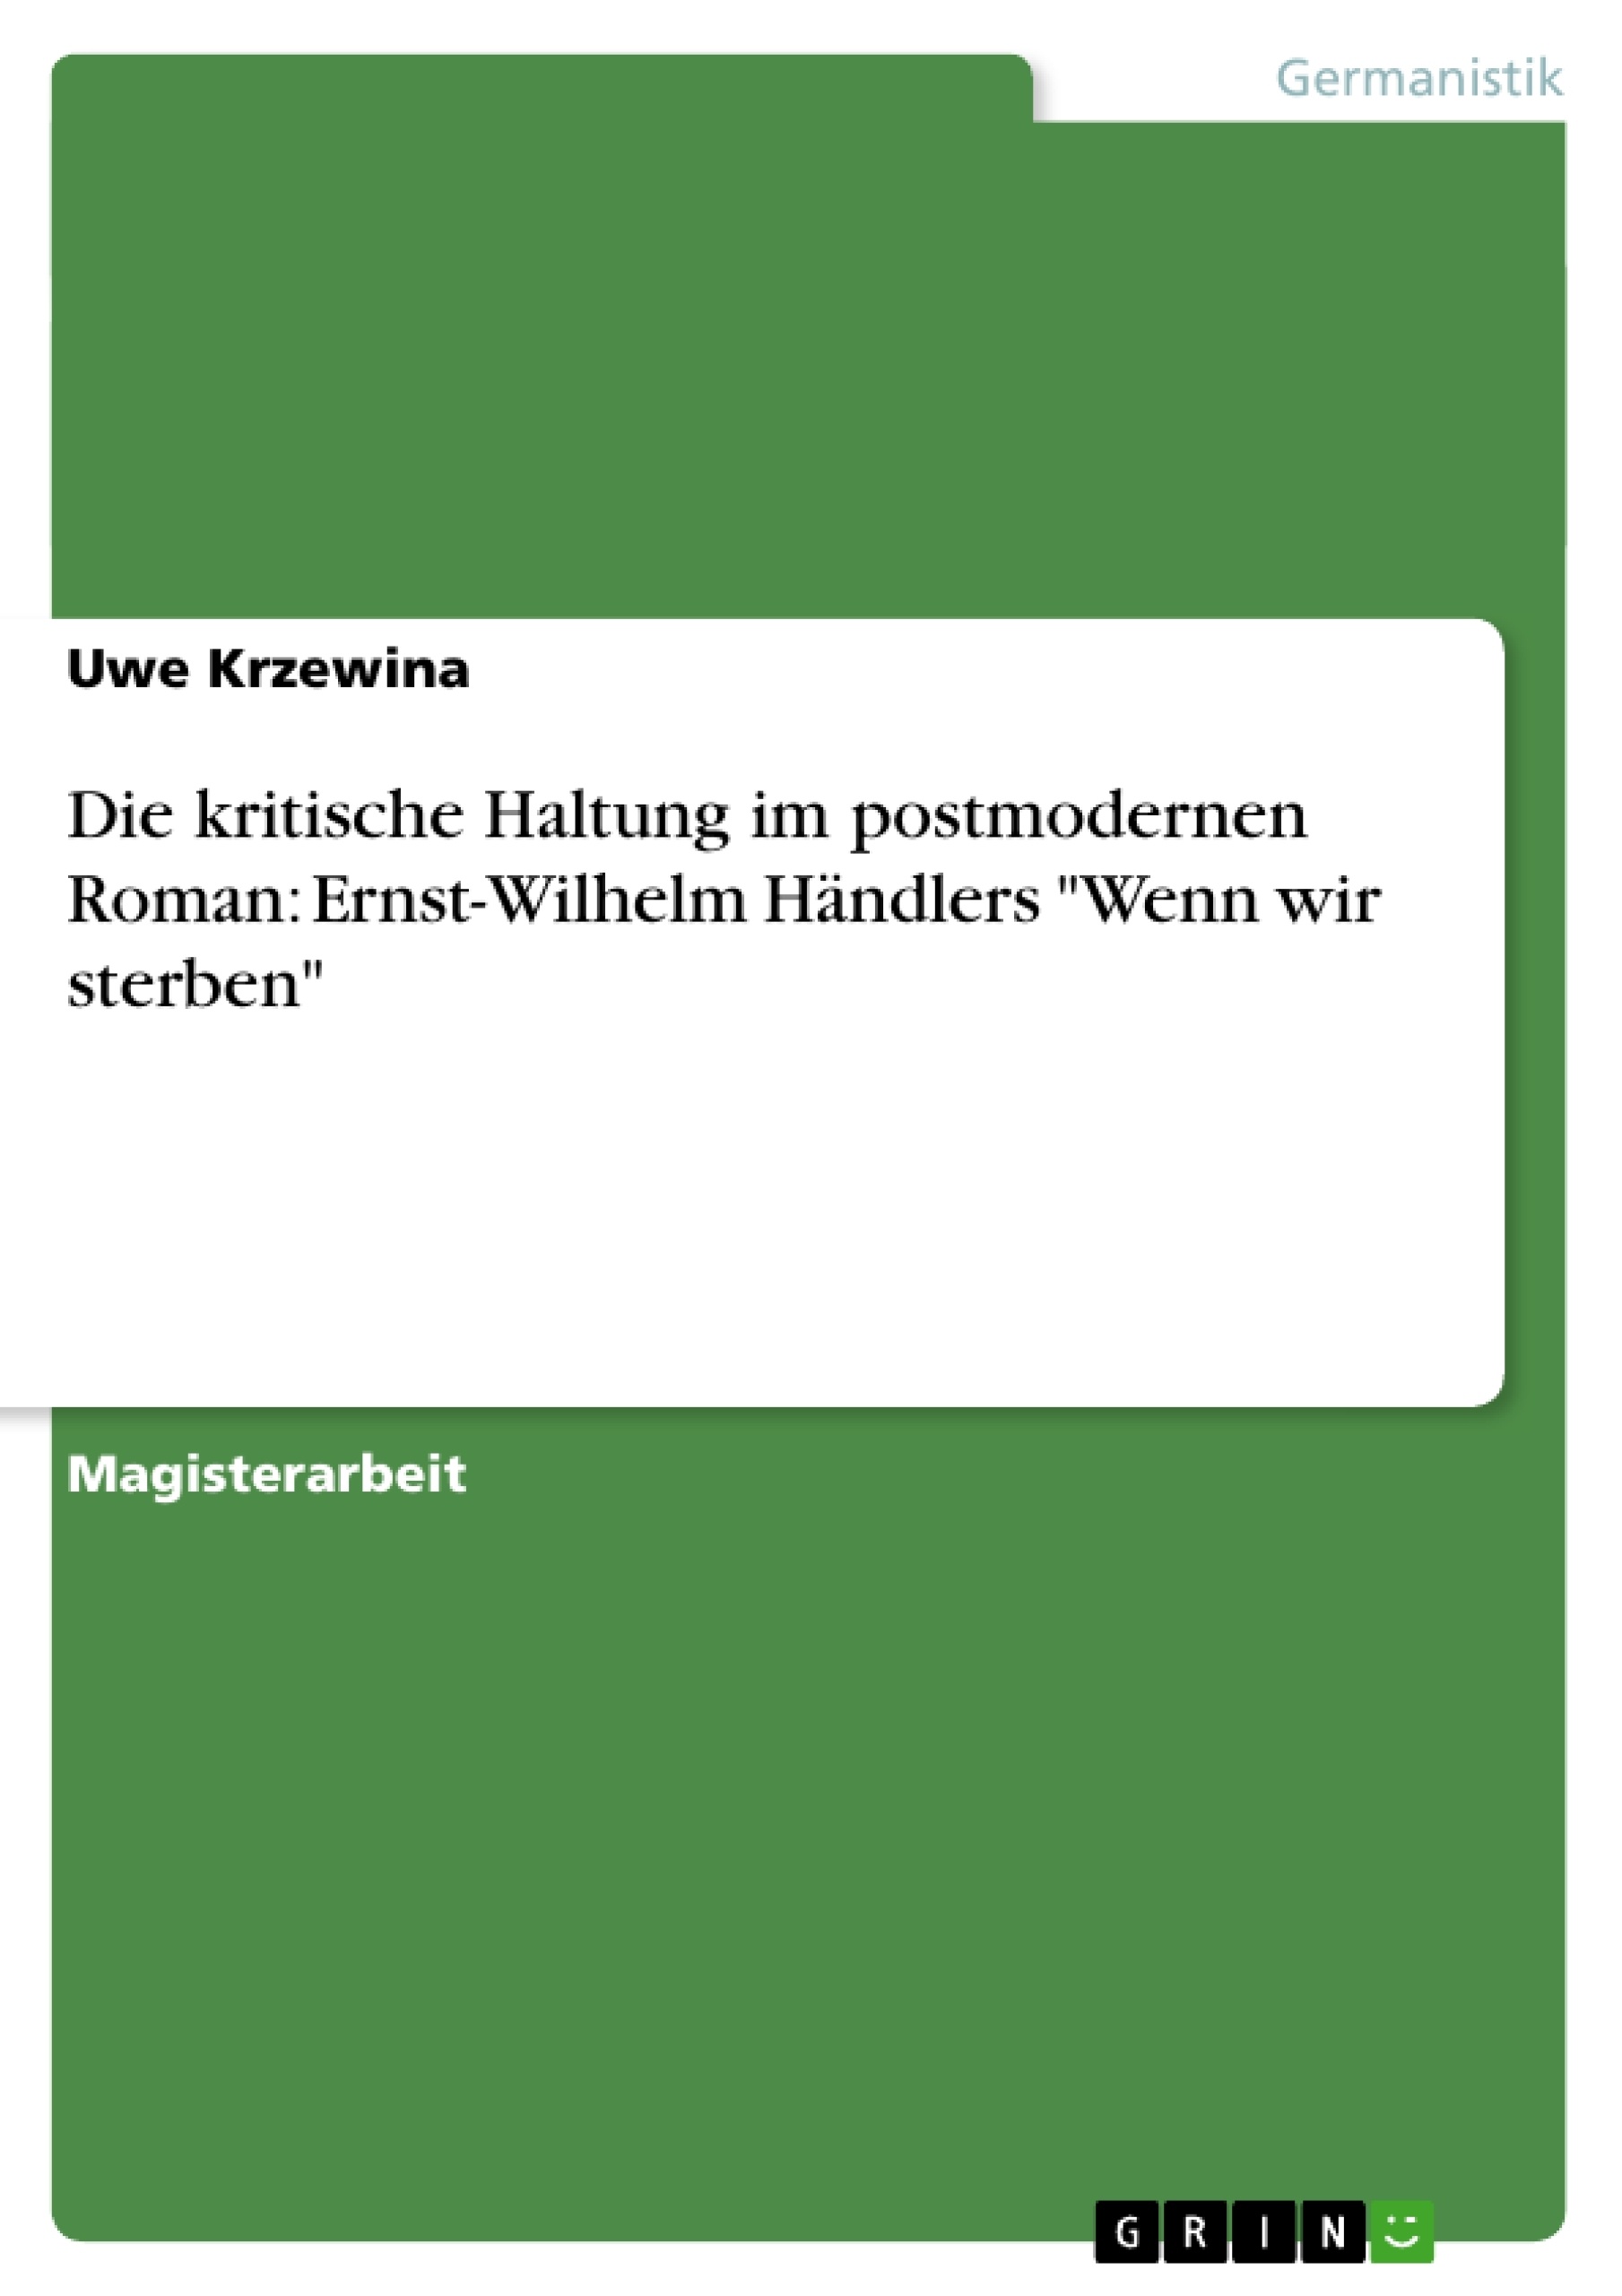 Titre: Die kritische Haltung im postmodernen Roman: Ernst-Wilhelm Händlers "Wenn wir sterben"